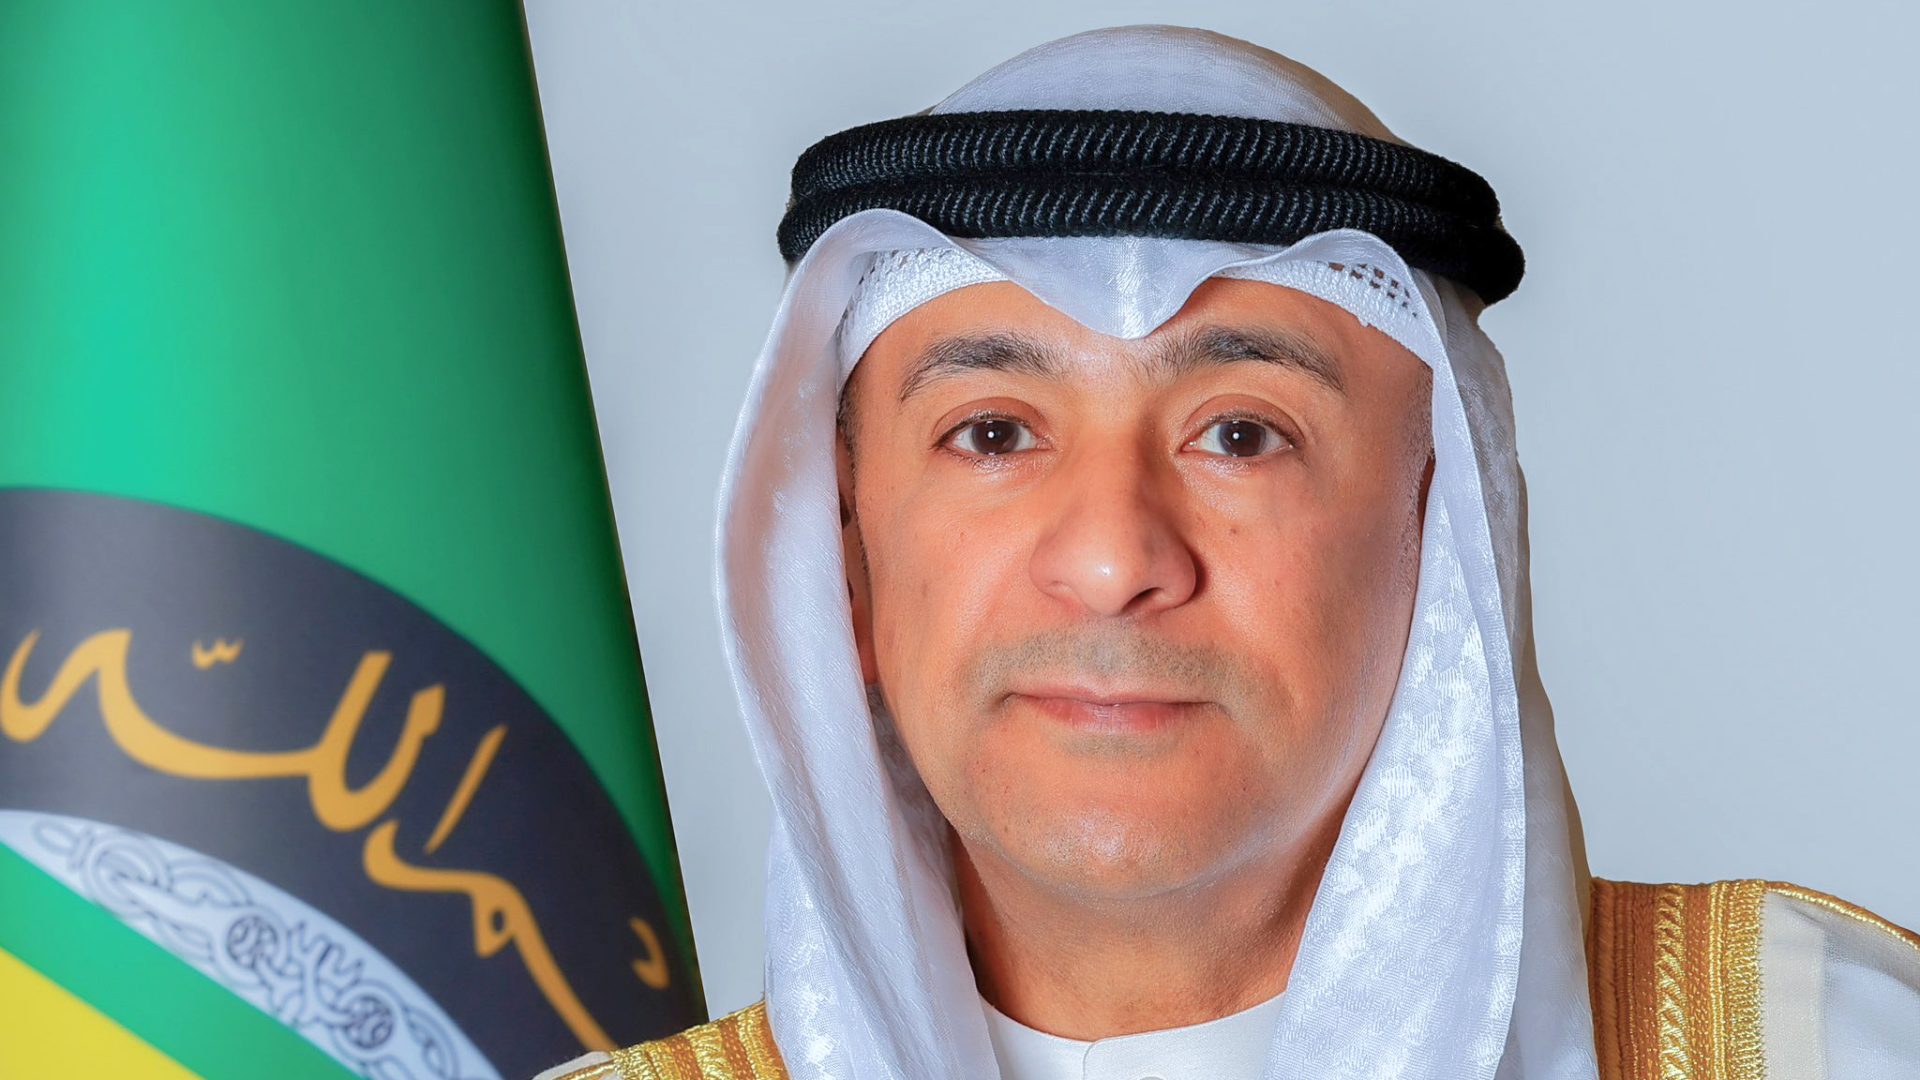 Secrétaire général du Conseil de coopération du Golfe : Les actions imprudentes d'Israël auront des conséquences désastreuses